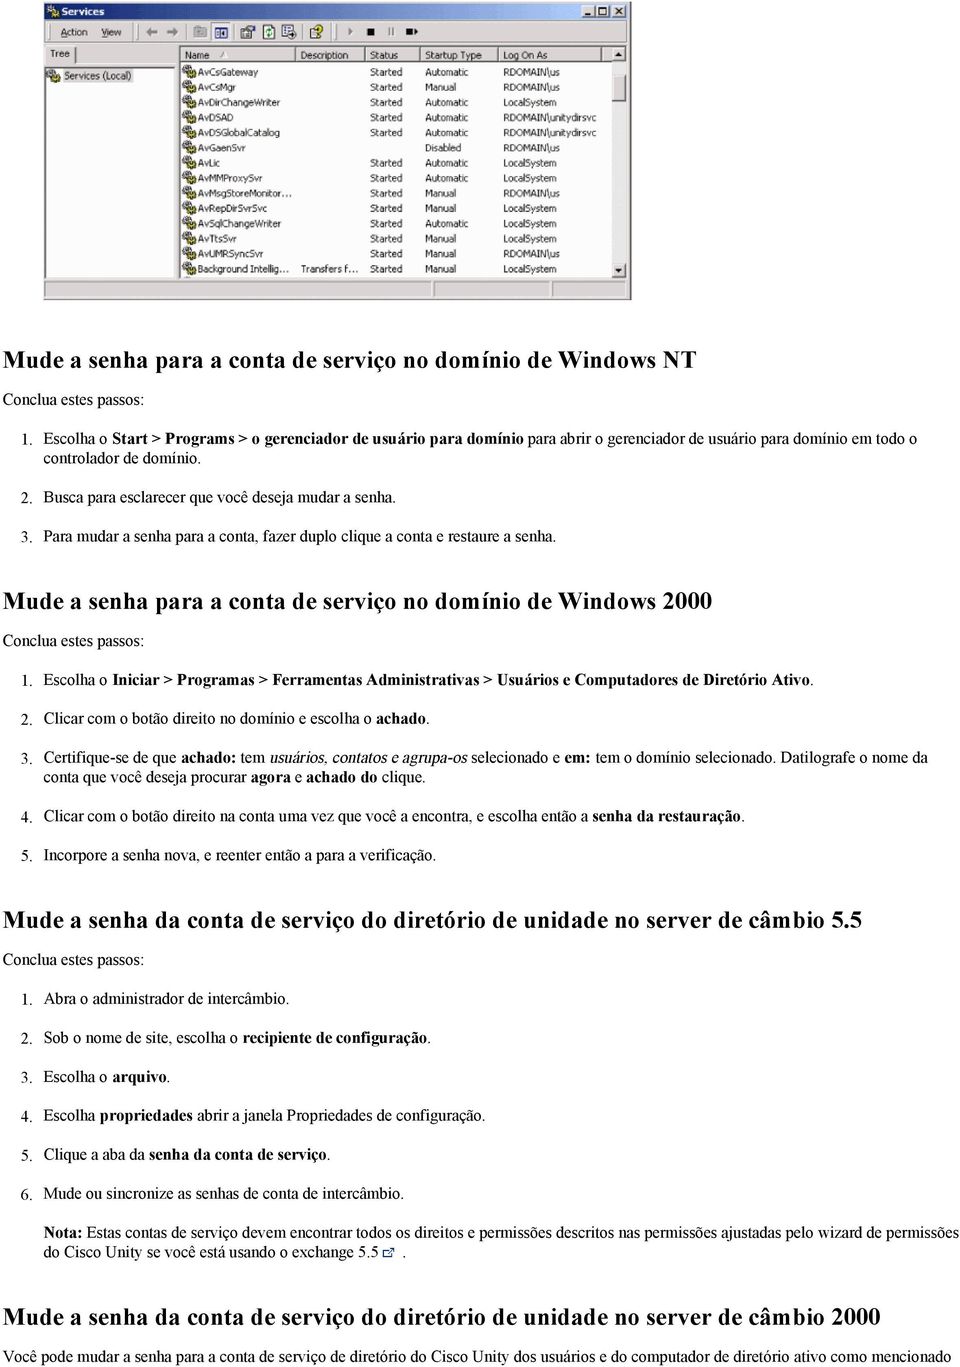 Mude a senha para a conta de serviço no domínio de Windows 2000 Escolha o Iniciar > Programas > Ferramentas Administrativas > Usuários e Computadores de Diretório Ativo.